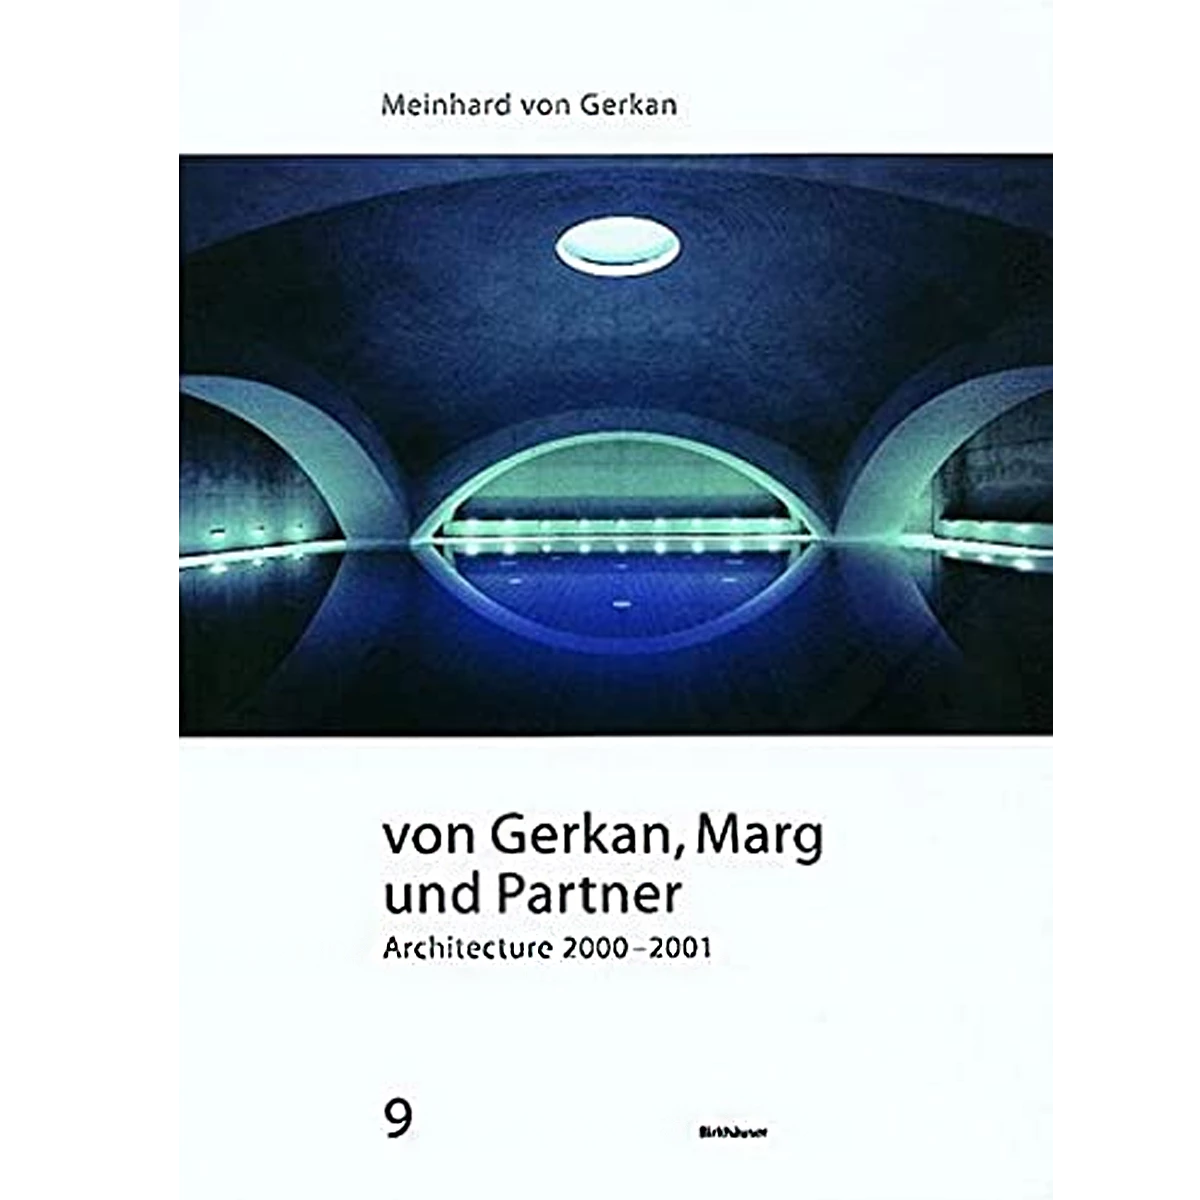 Von Gerkan, Marg und Partner 2000-2001